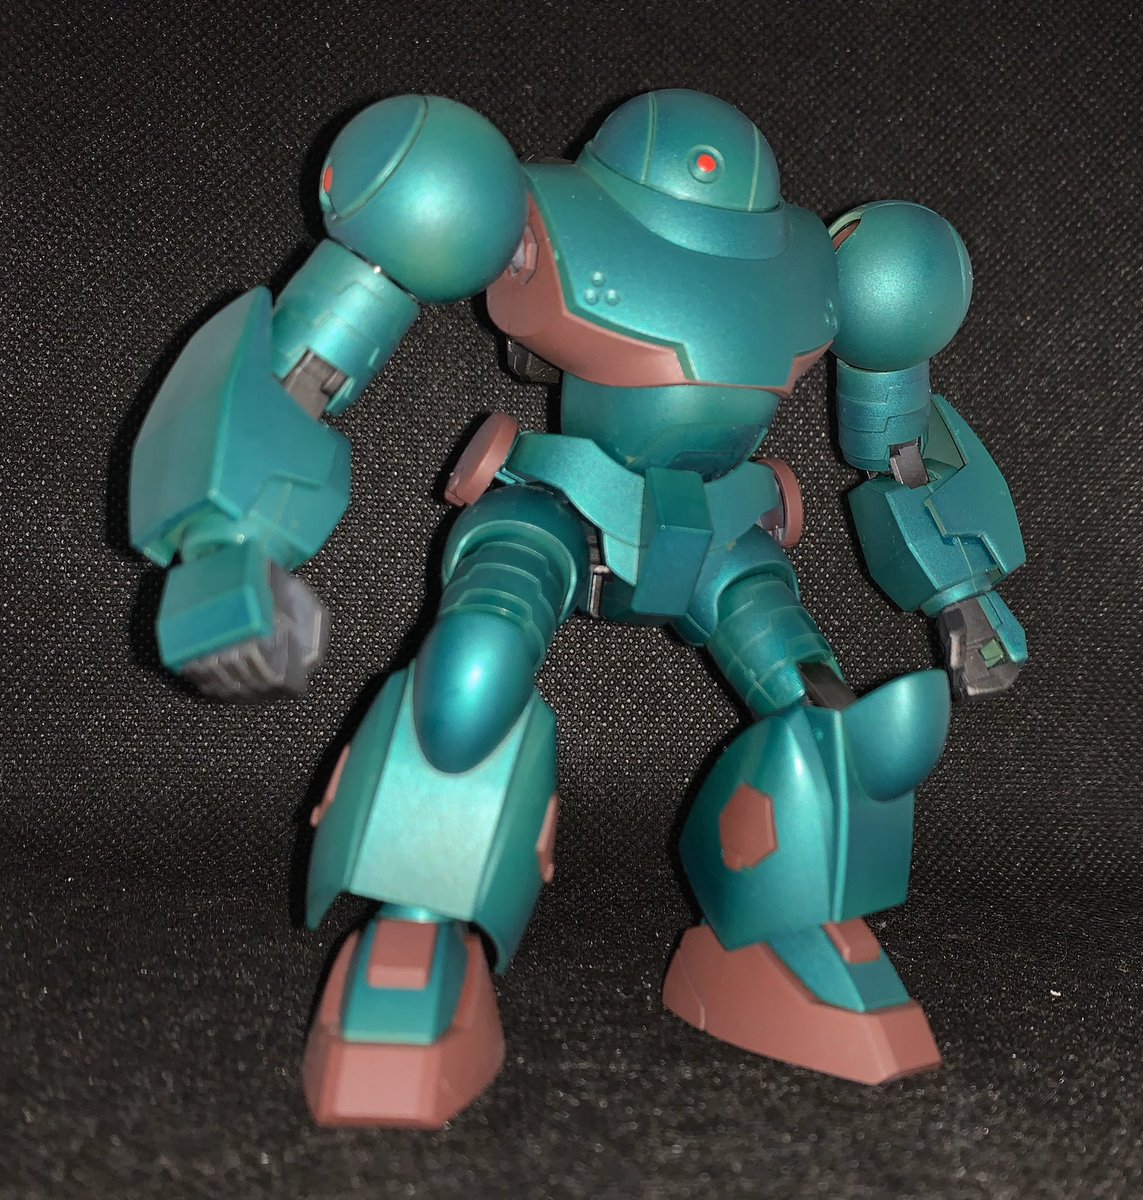 Zig 黎明期のsfロボット作品の最初の方に出てくる敵ロボットみたいな色合いになったハイモック君